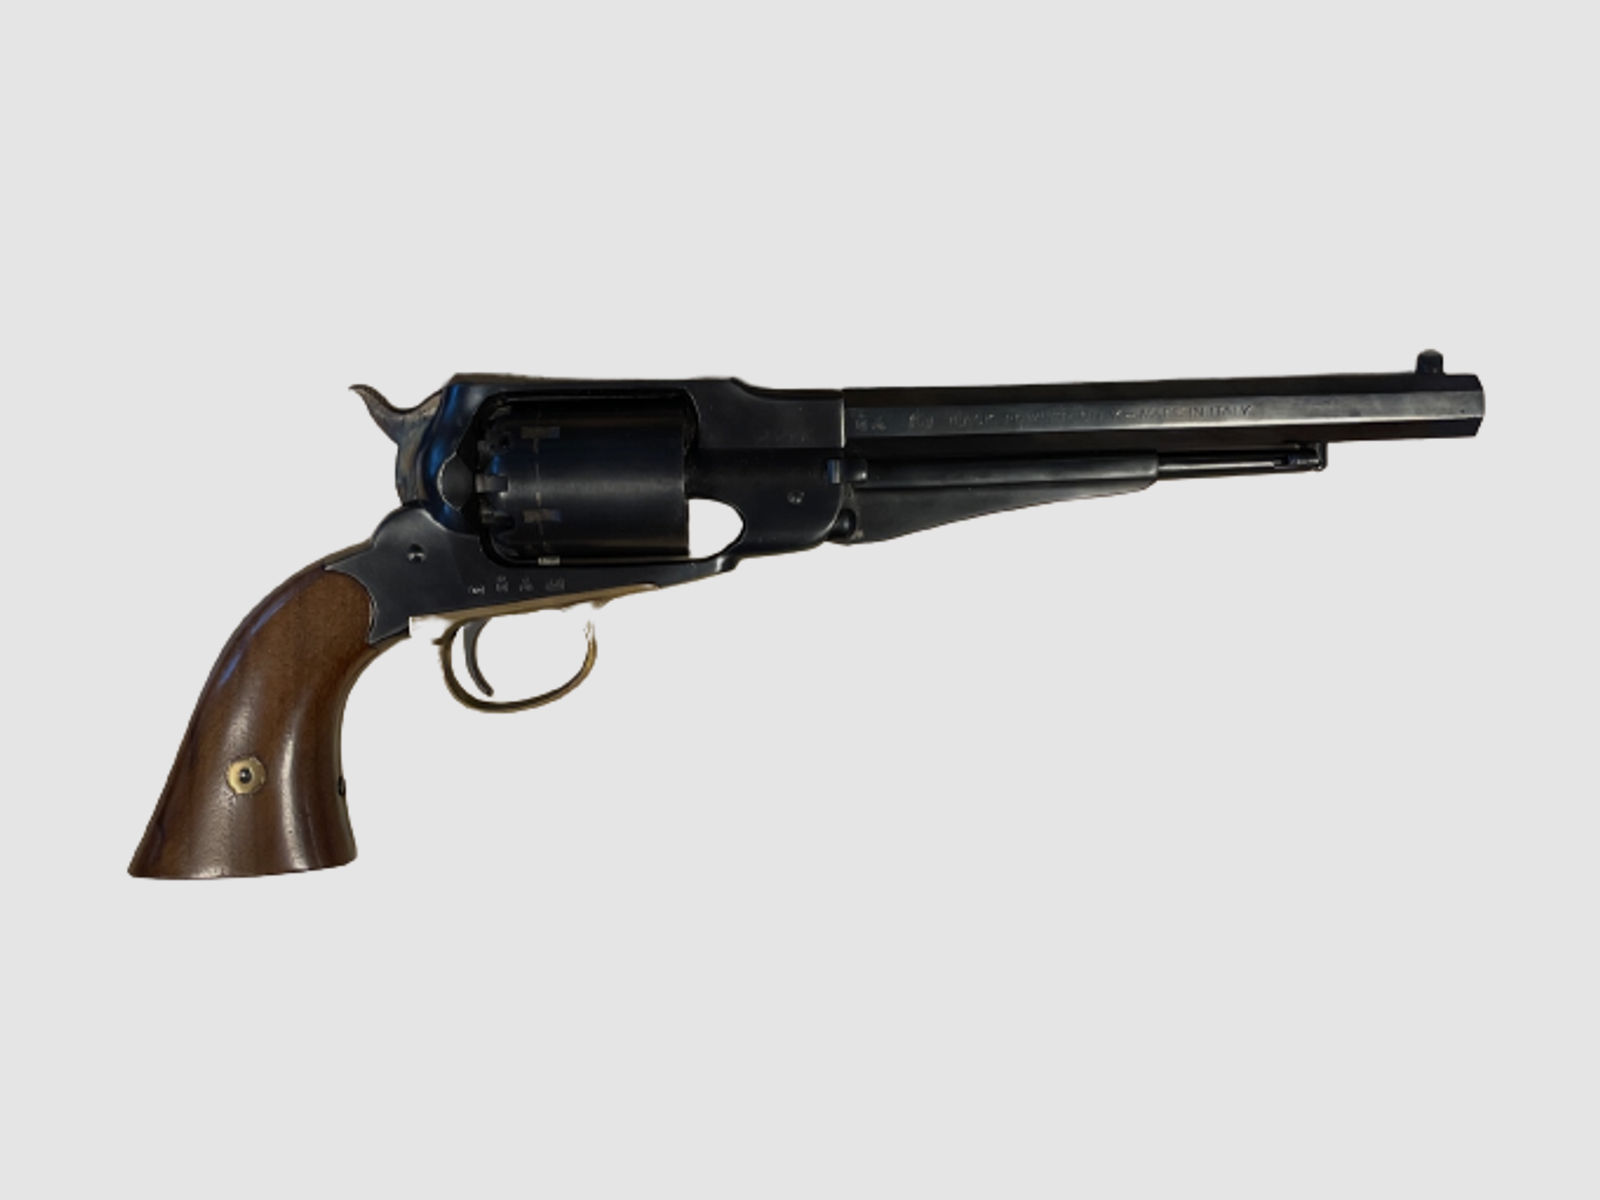 Western Revolver im Kal. 44